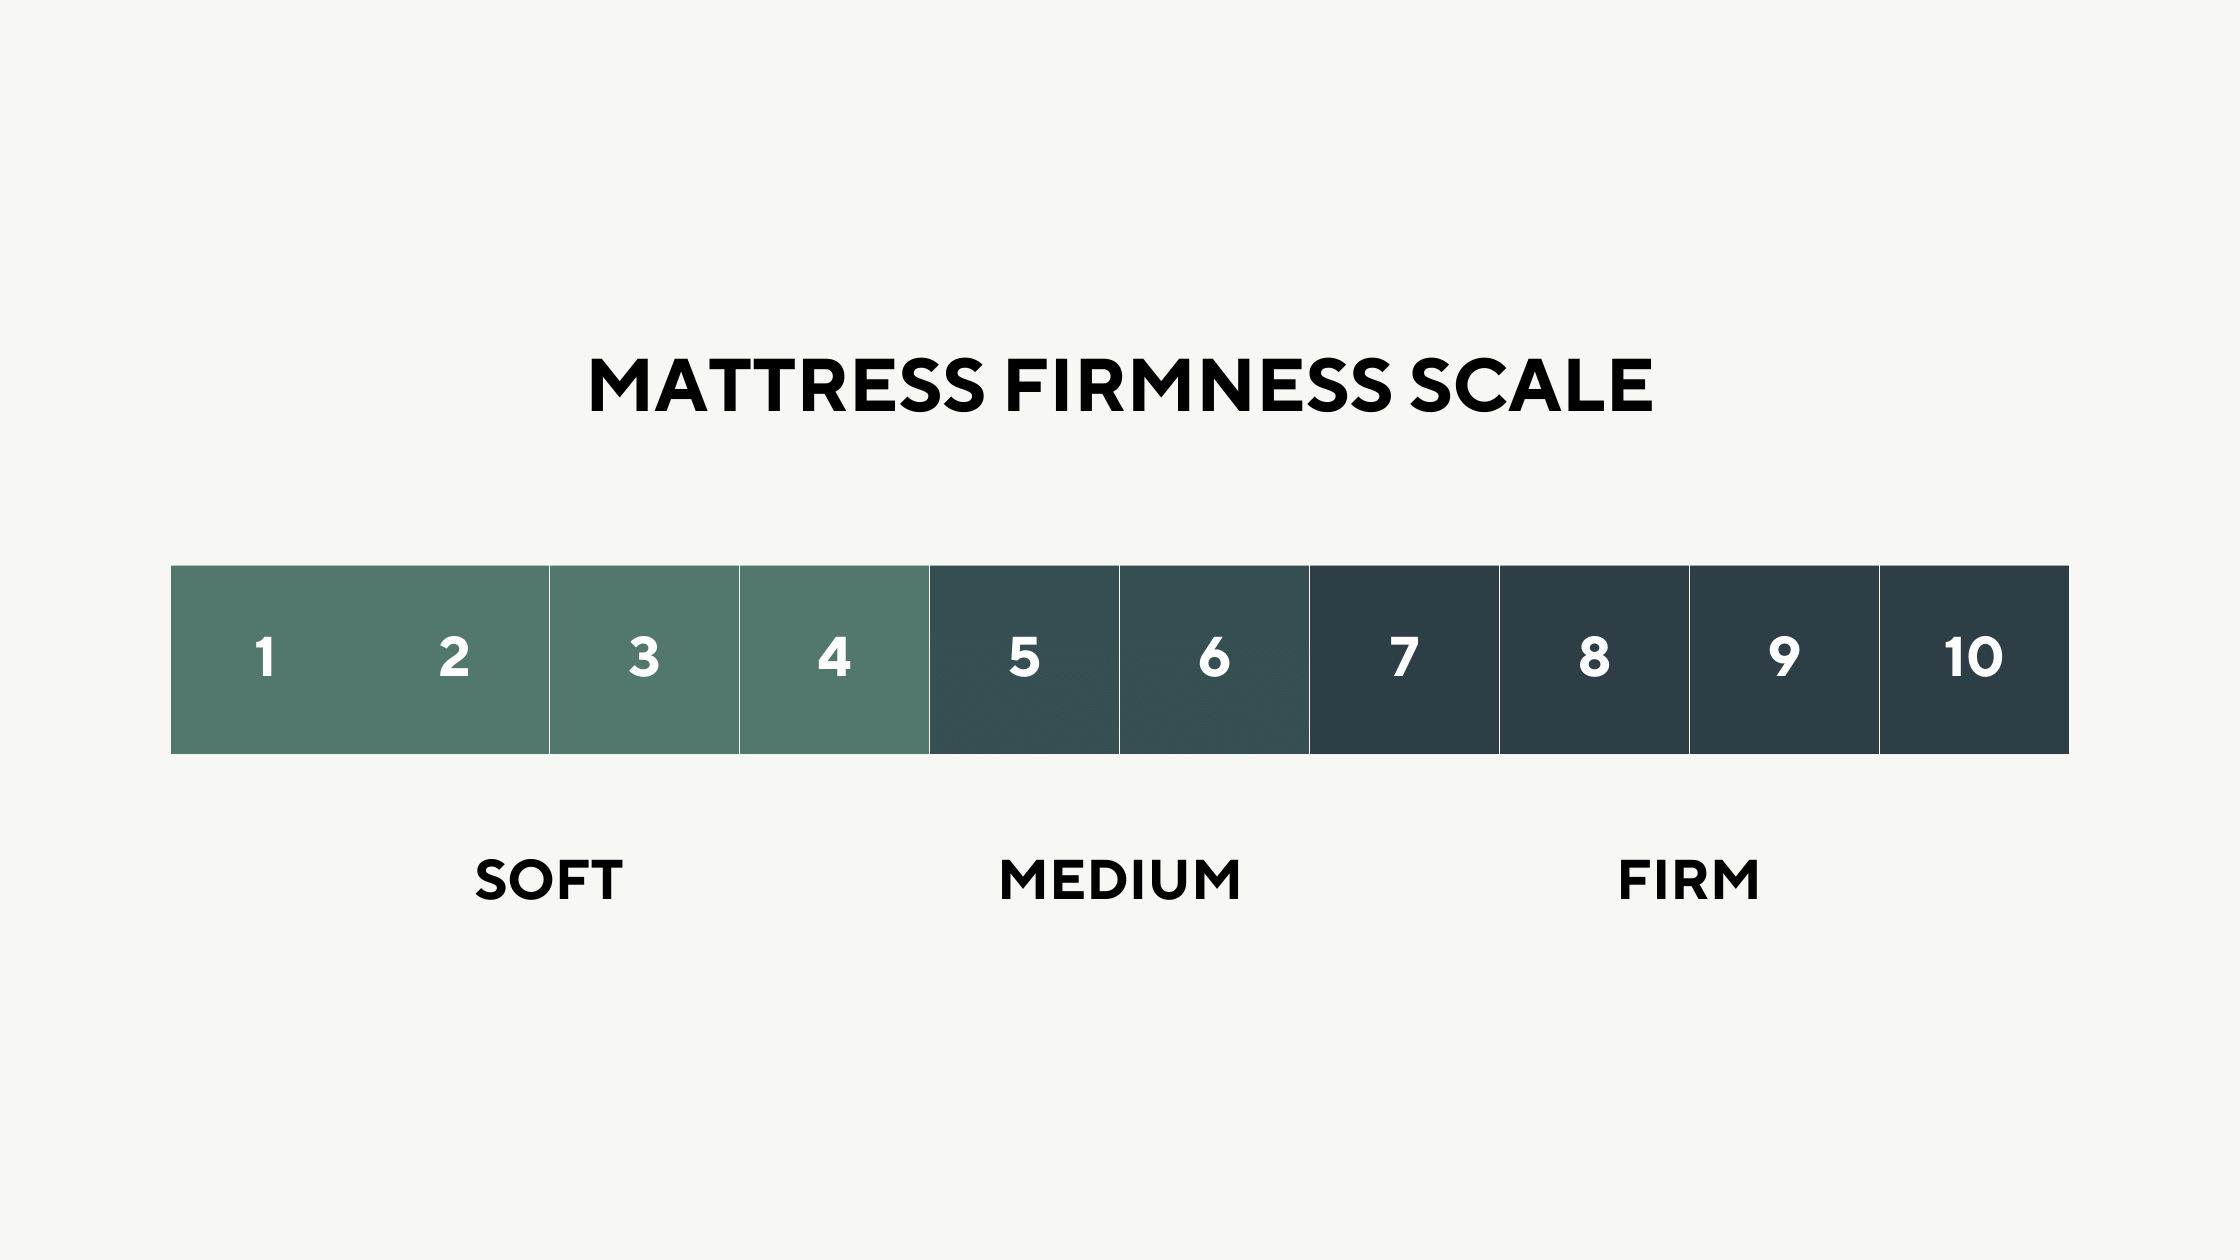 Mattress firmness scale india